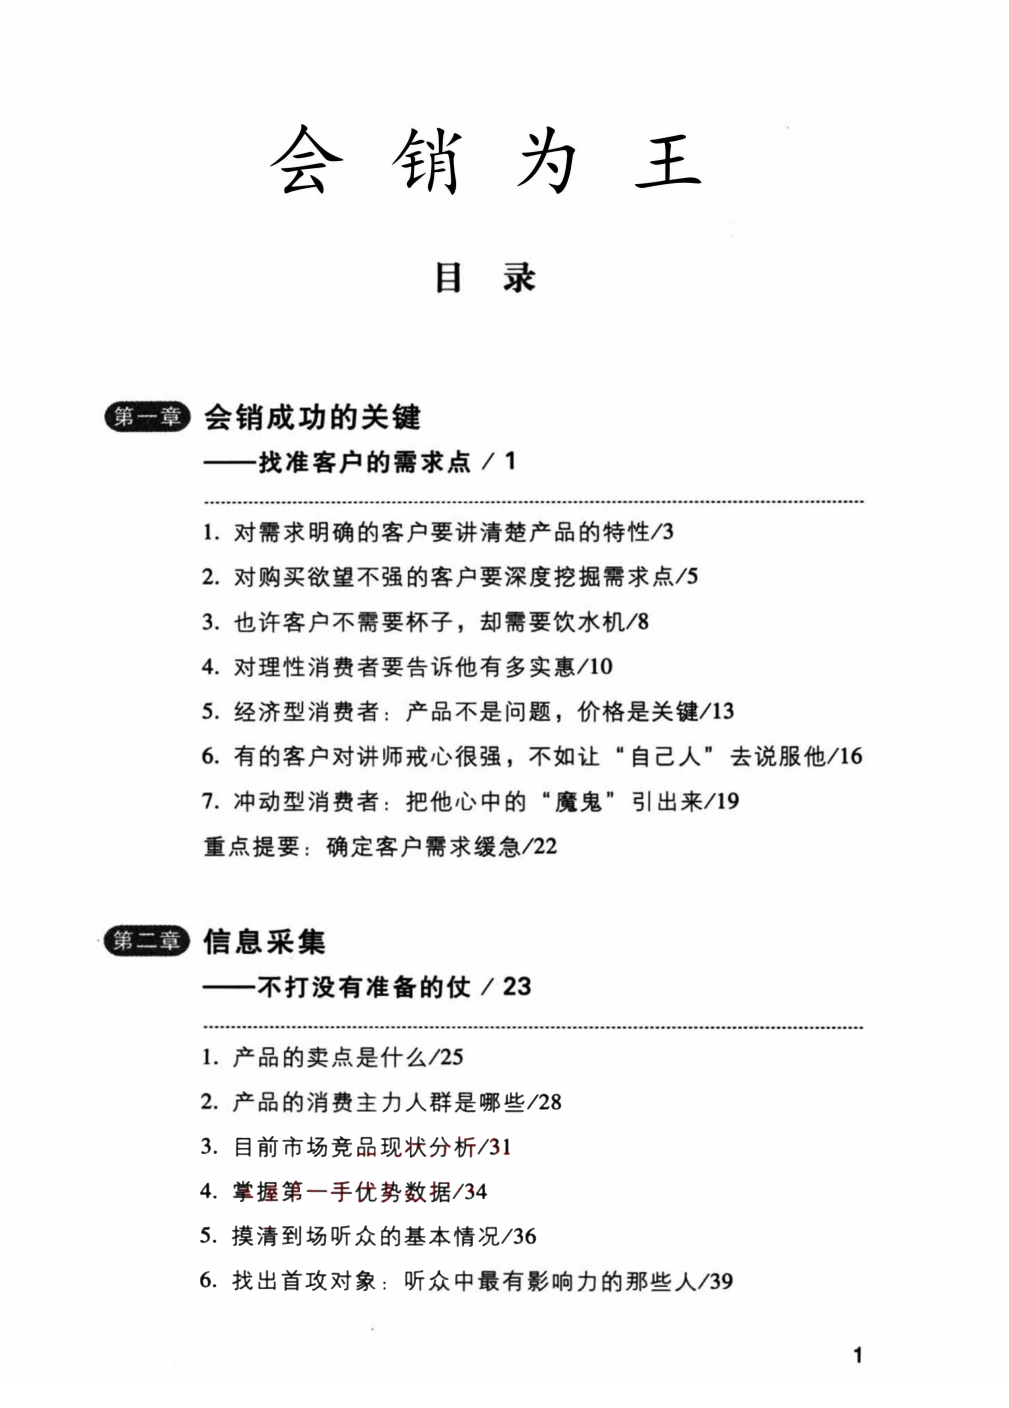 《会销为王》解密.pdf「百度网盘下载」PDF 电子书插图